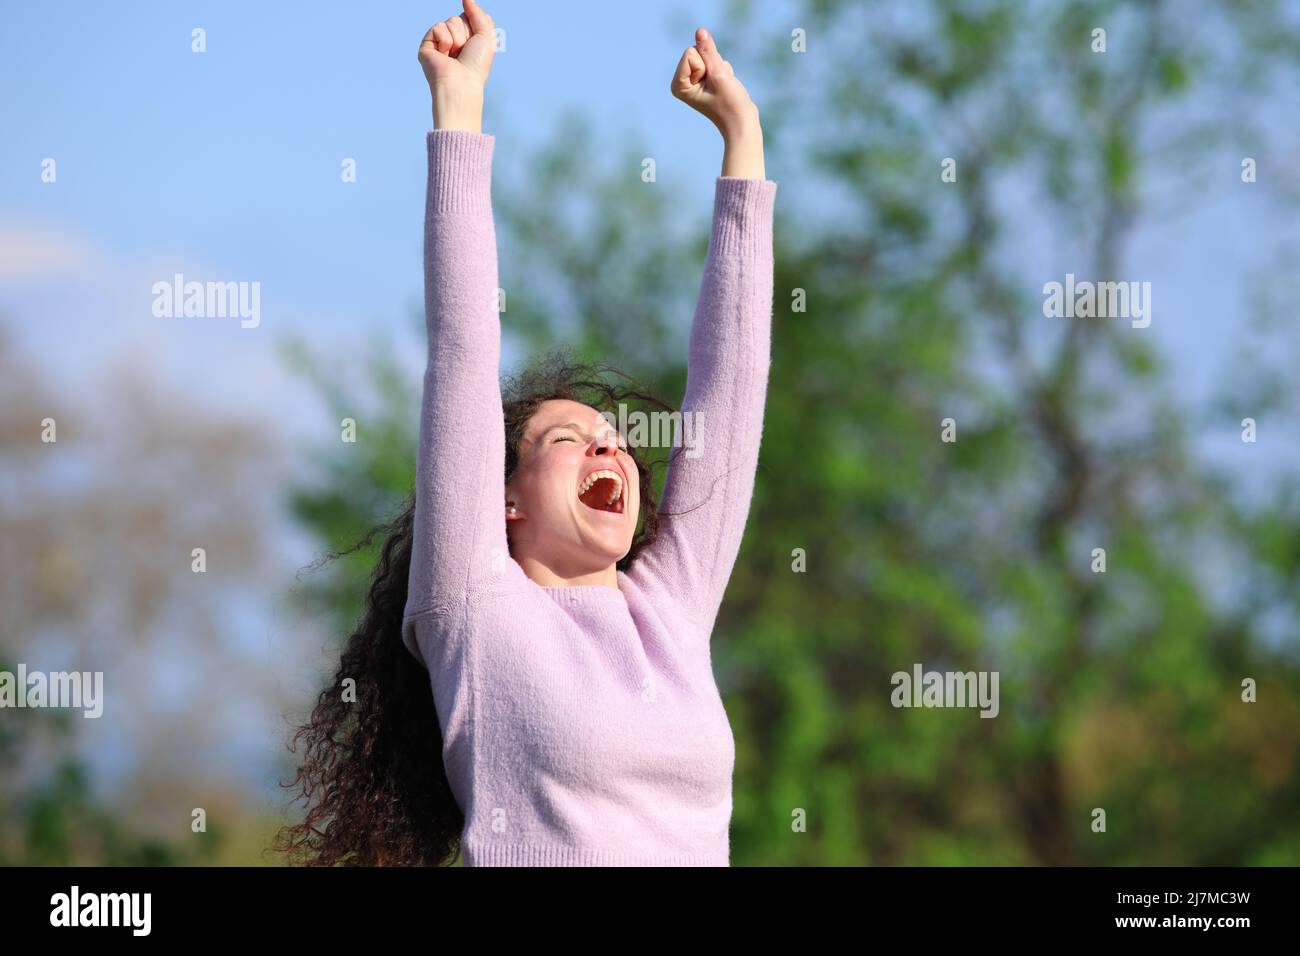 Eine aufgeregte Frau, die in einem Park die Arme hebt und einen guten Tag im Pullover feiert Stockfoto